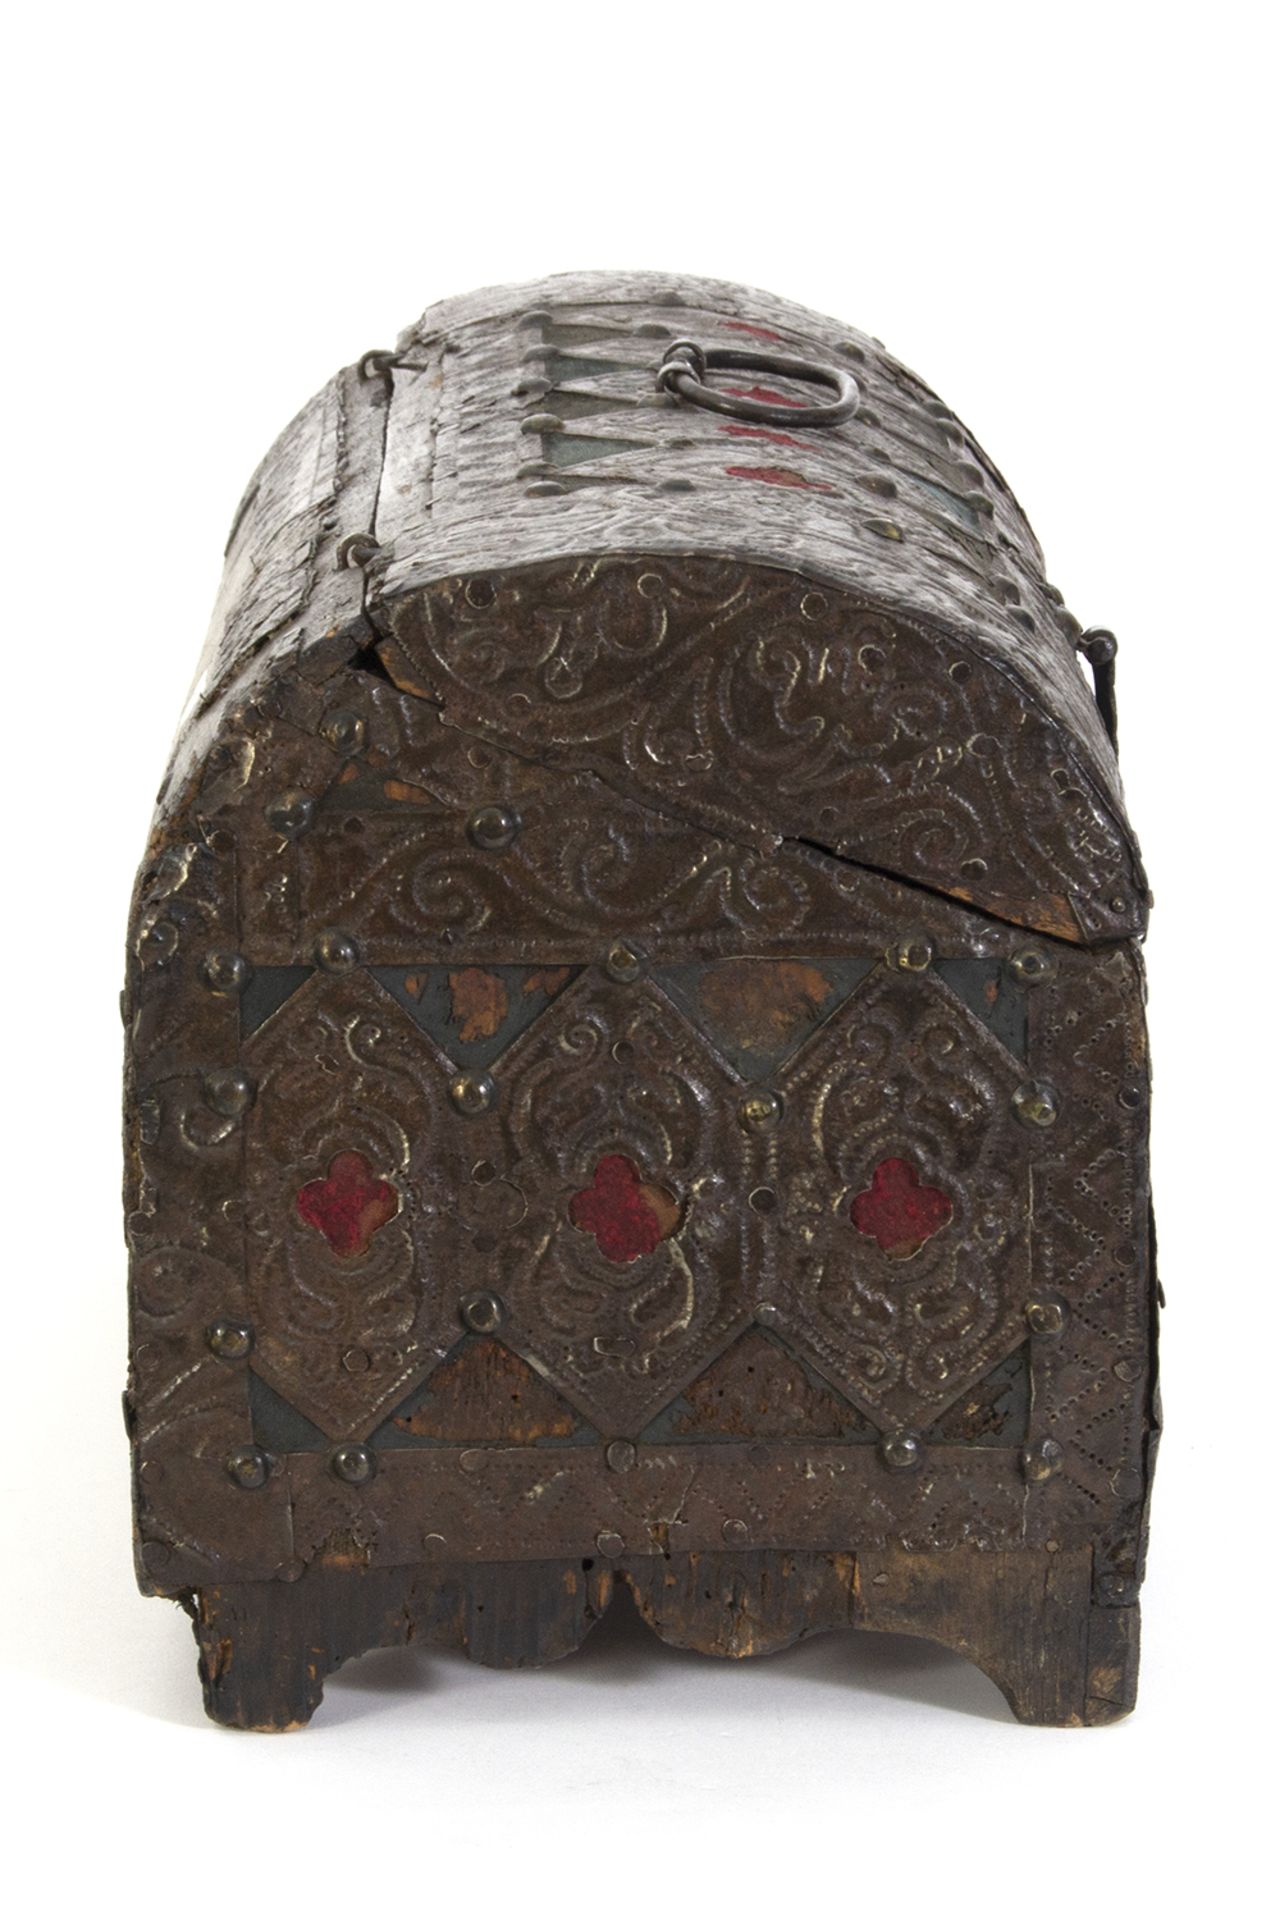 Arqueta en madera revestida de metal repujado y tela con herrajes en hierro. - Image 4 of 5